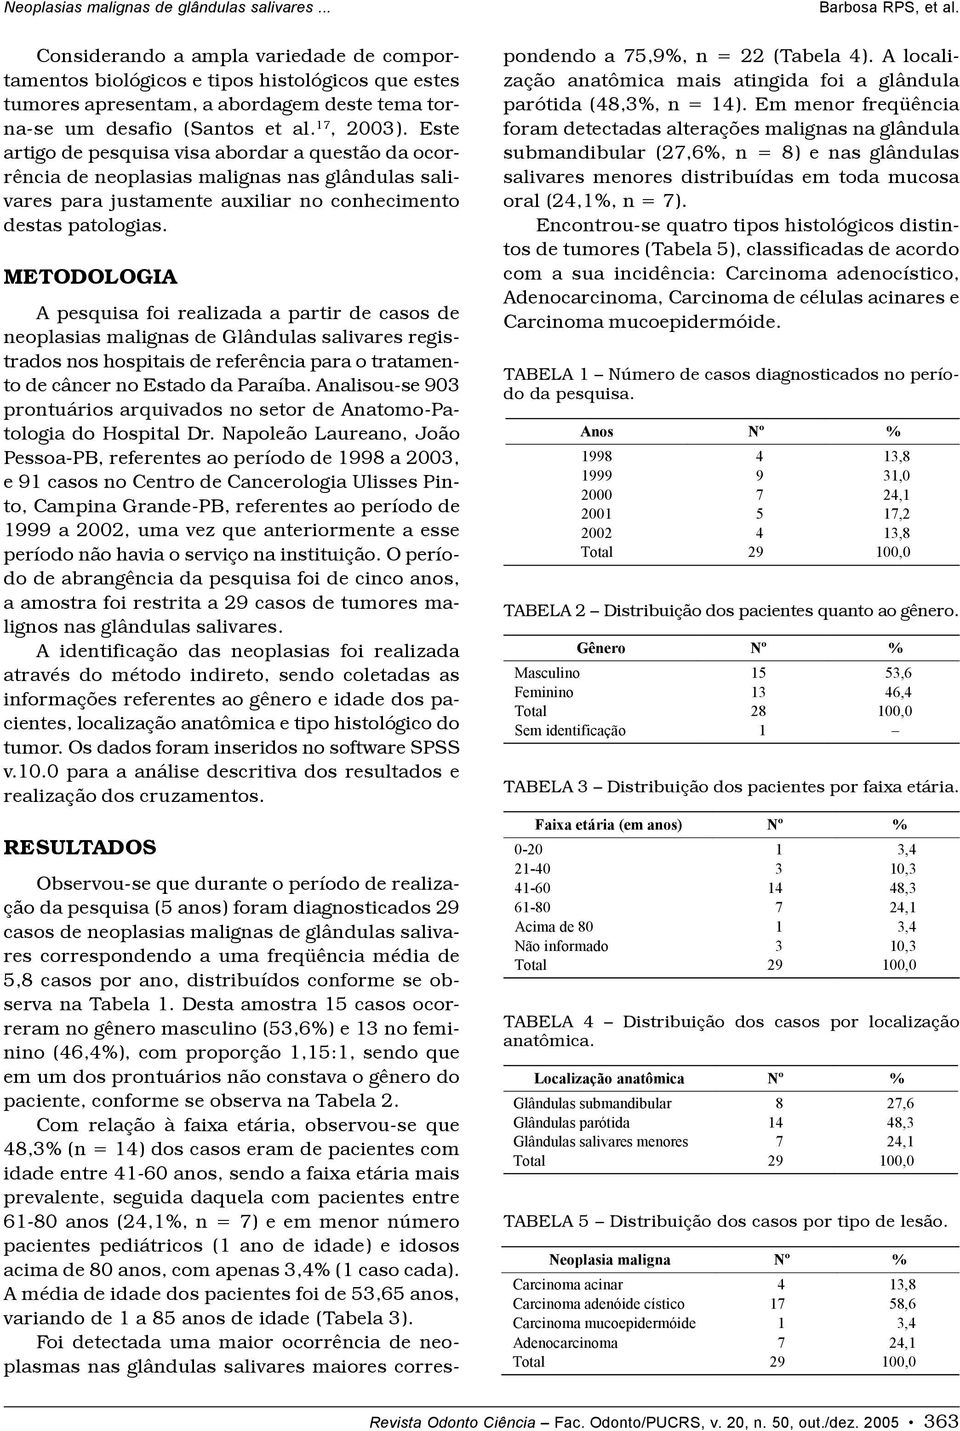 METODOLOGIA A pesquisa foi realizada a partir de casos de neoplasias malignas de Glândulas salivares registrados nos hospitais de referência para o tratamento de câncer no Estado da Paraíba.